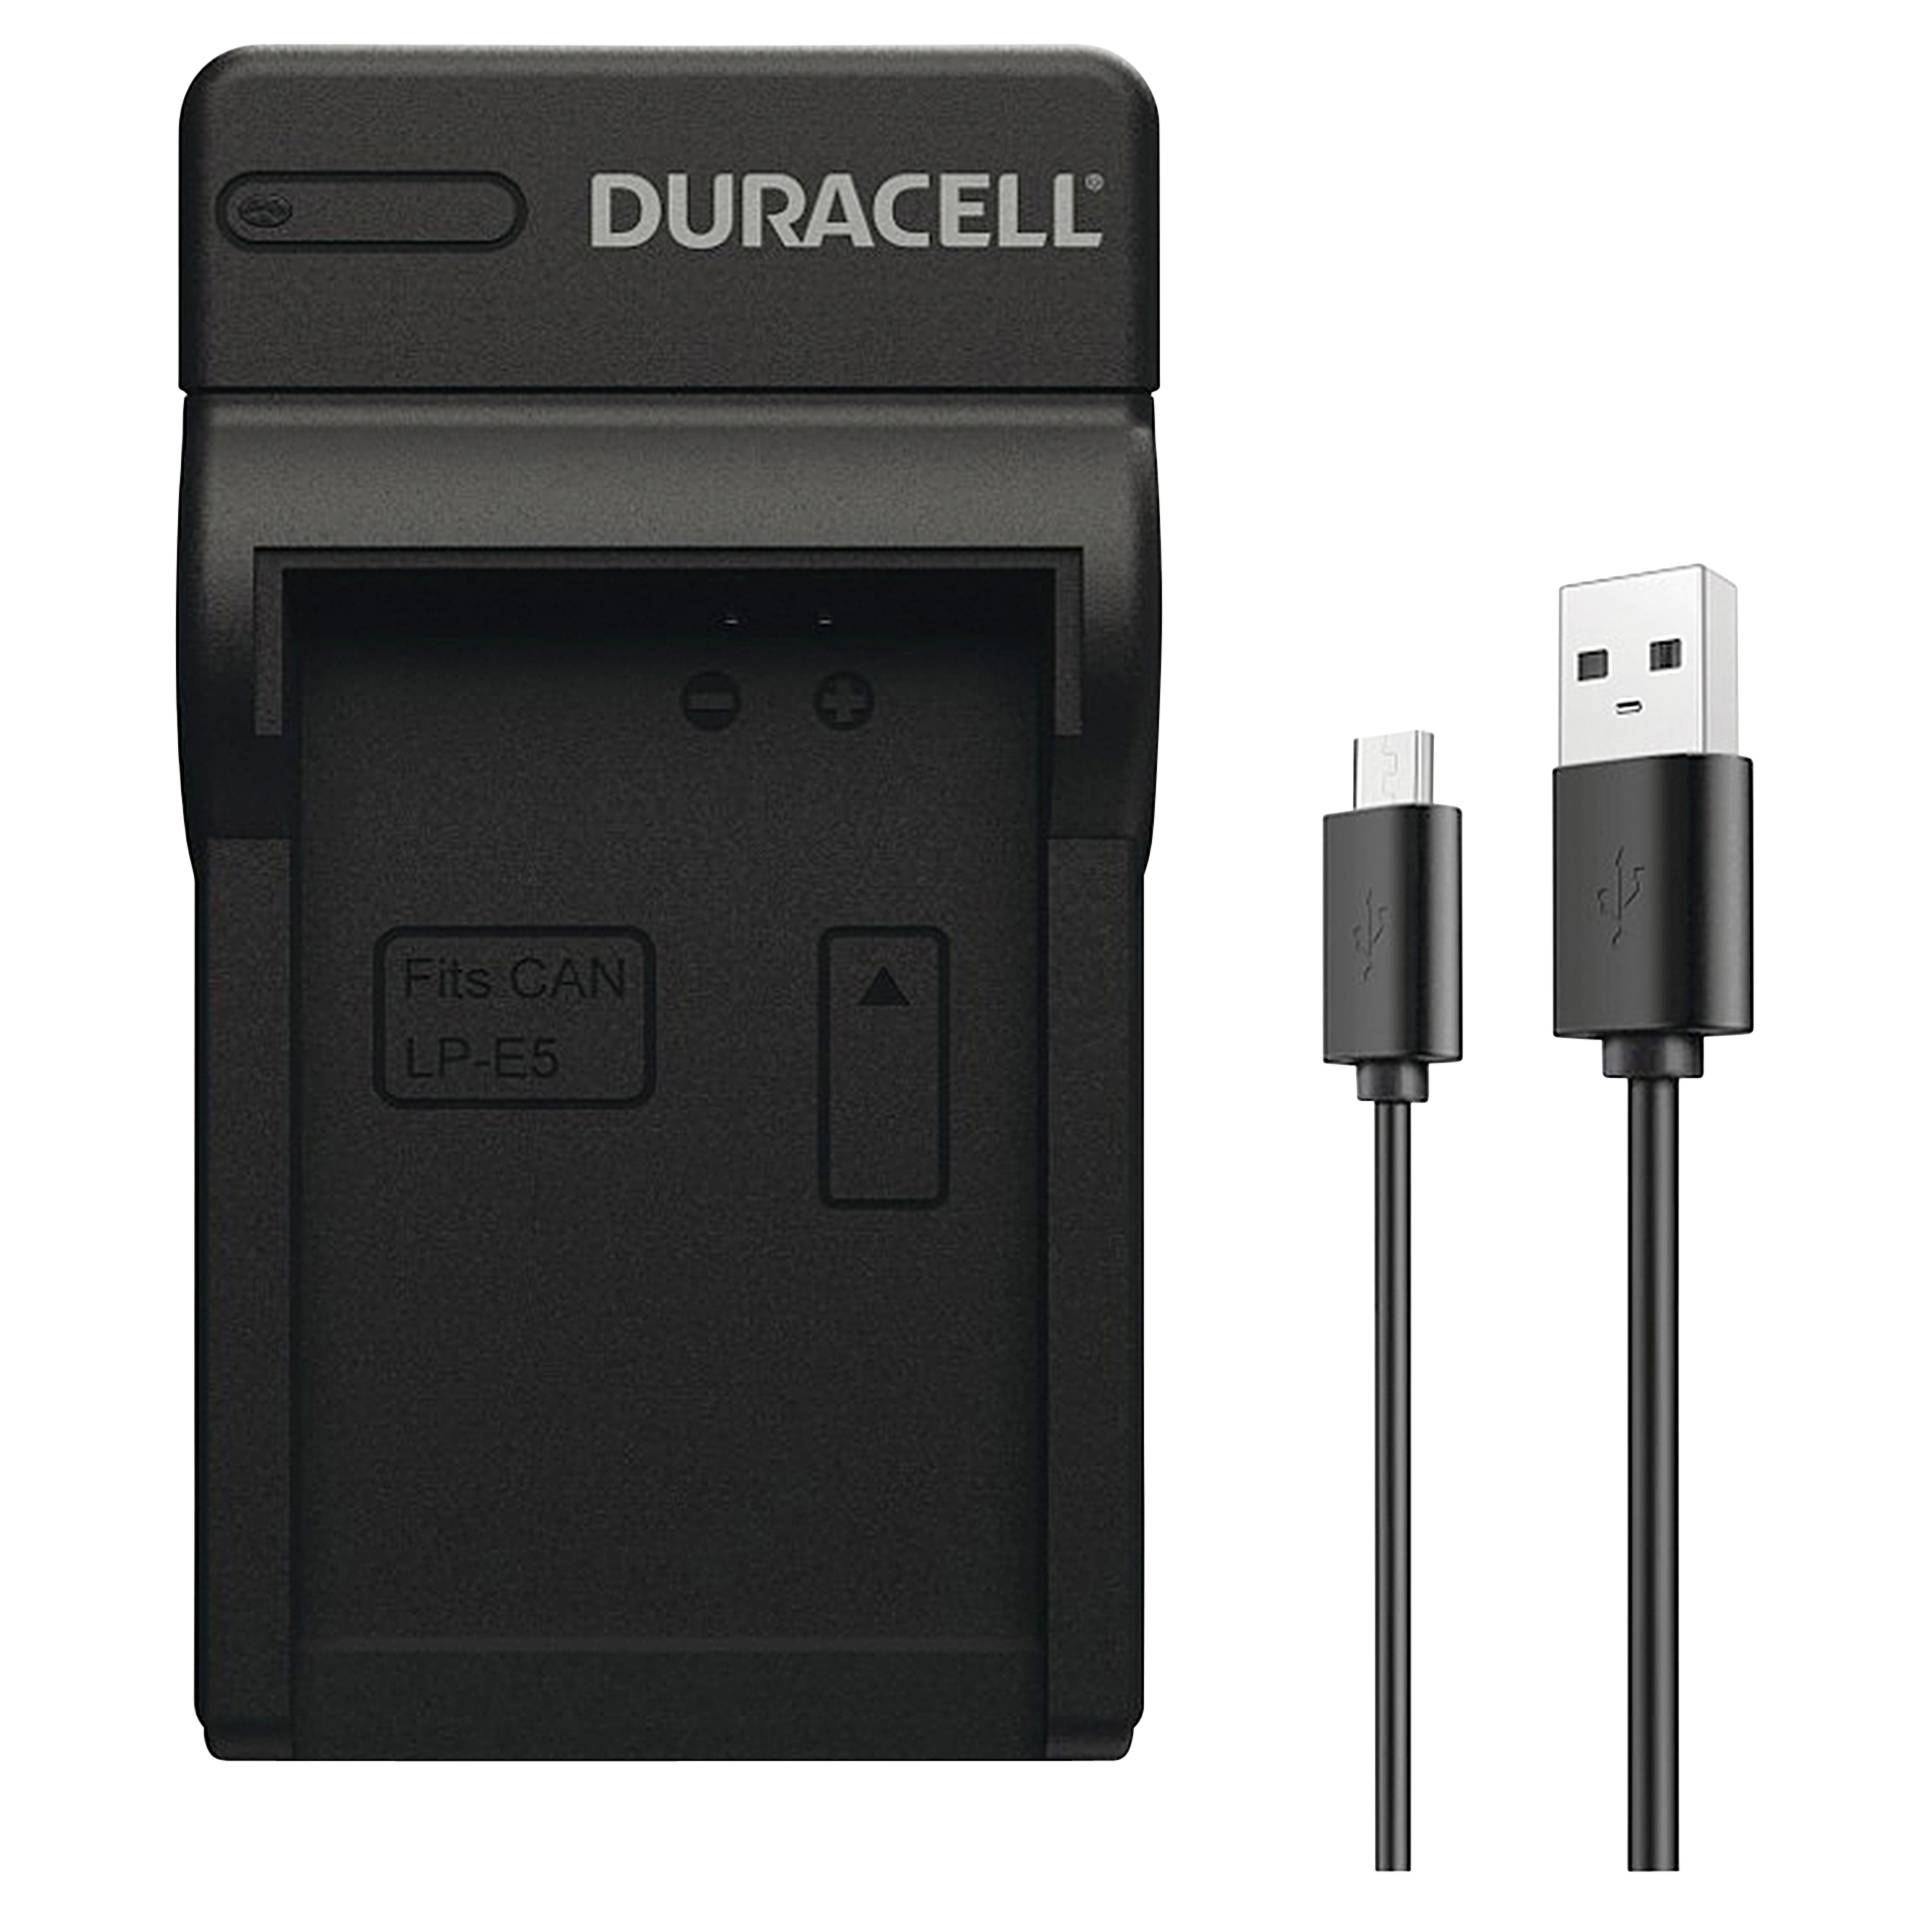 Duracell caricabatt.con cavo USB per DR9925/LP-E5